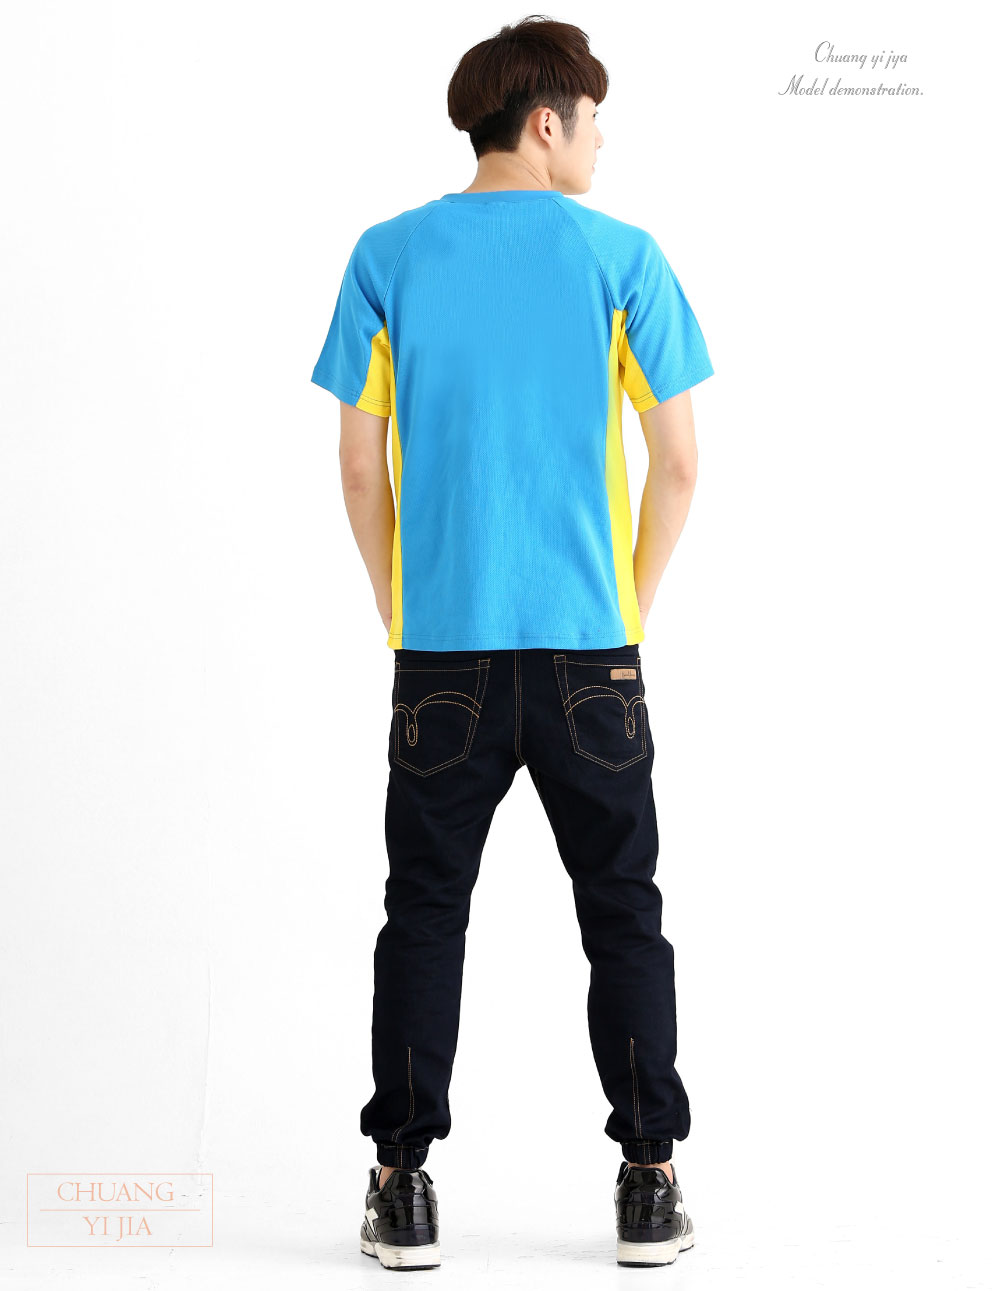 創意家團體服-T恤訂製款v領斜袖運動風-水藍接黃